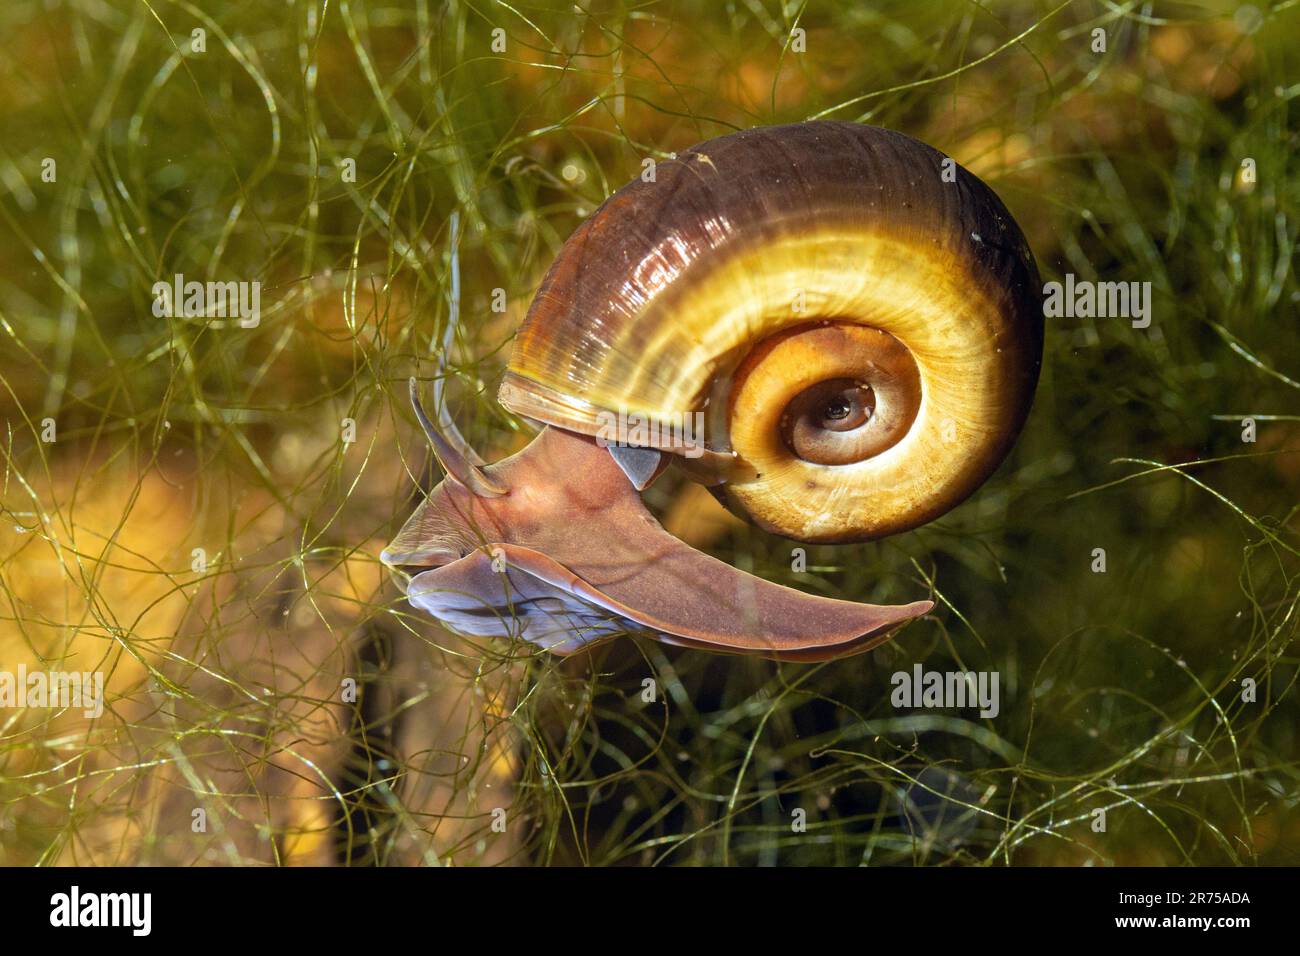 Corne de bélier de couleur corne, grand ramshorn, trompette (Planorbius corneus), rampant à travers la végétation sous-marine, vue latérale Banque D'Images